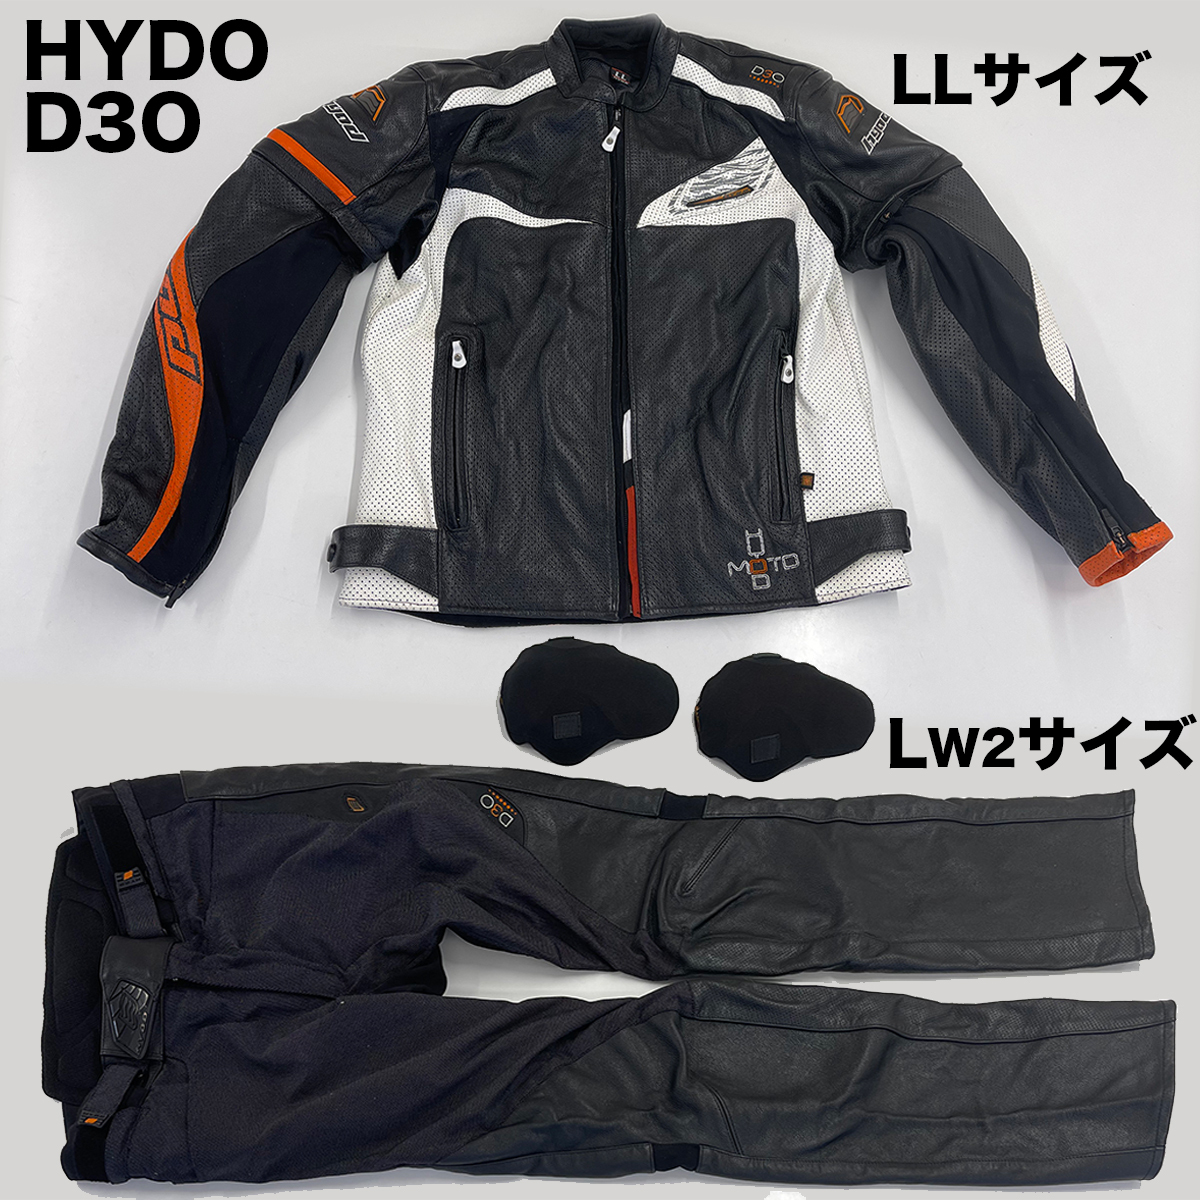 【美品】HYOD ST-X D3O レザーメッシュジャケット+インナー LLサイズ ＆ HYOD ST-X D3O レザーパンツ LW2サイズ_画像1